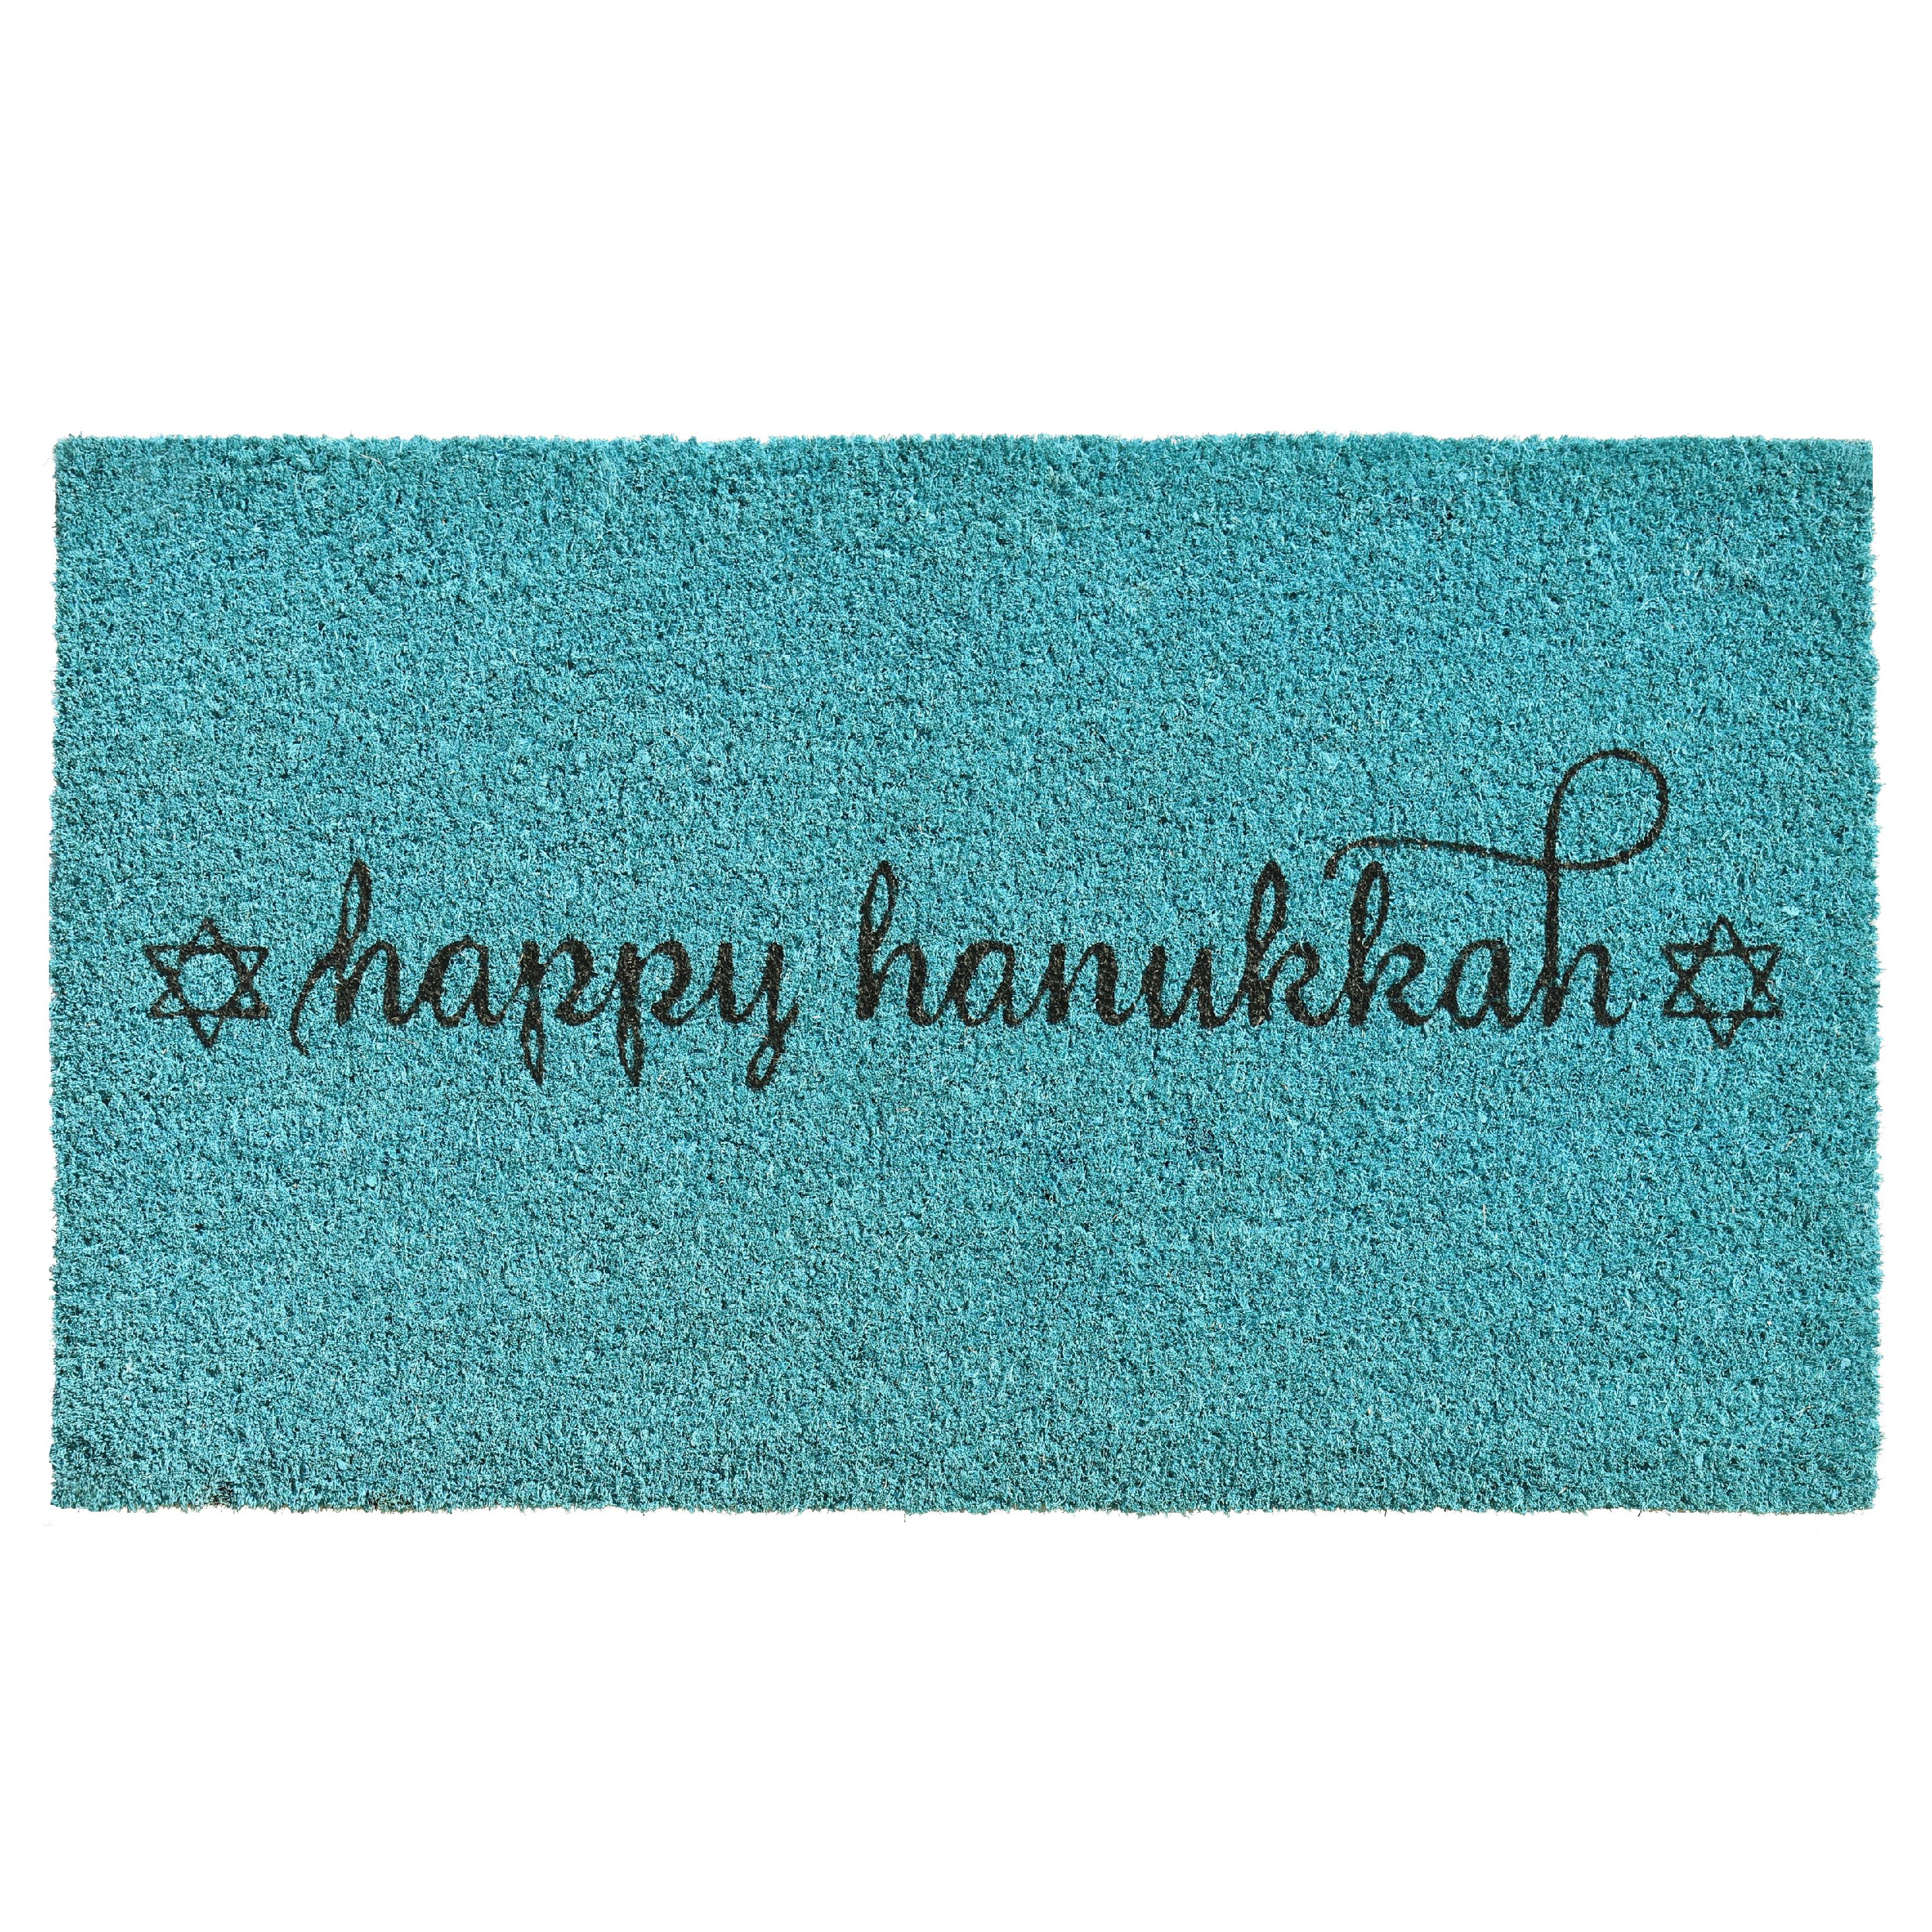 Calloway Mills Happy Hanukkah Outdoor Doormat - image 1 of 3